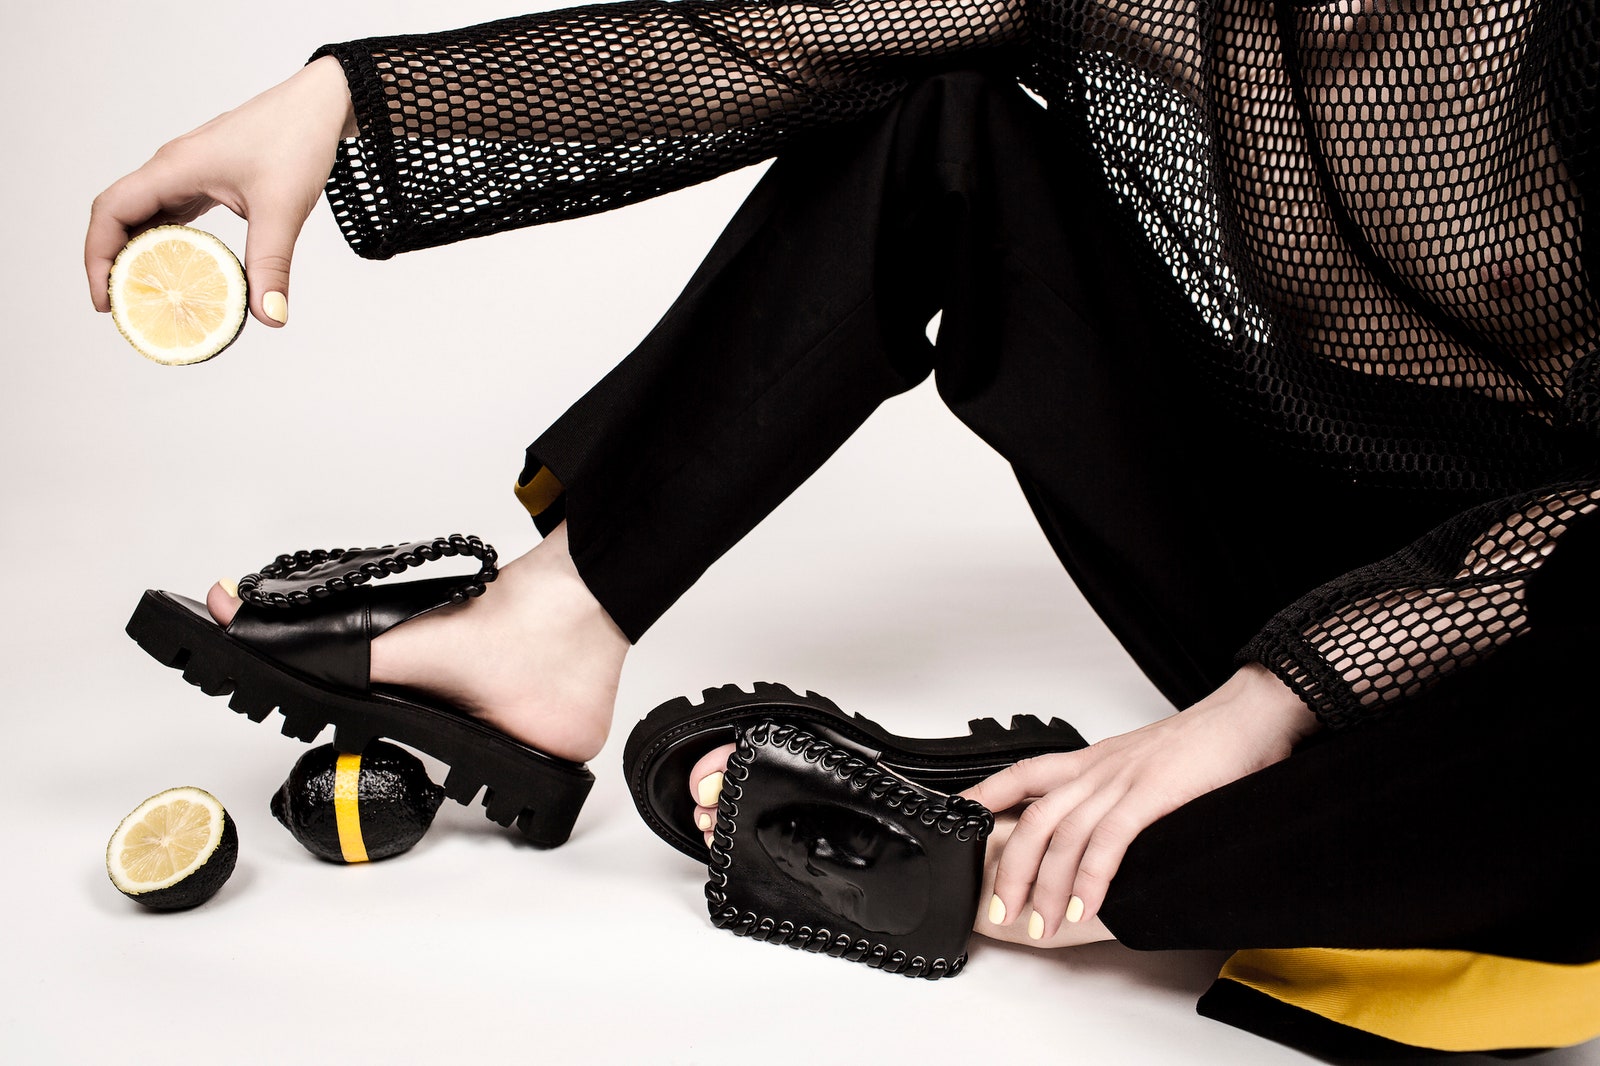 Коллекция обуви Ganor Dominic весналето 2017 вдохновленная мифами о Калипсо и Электре | Glamour